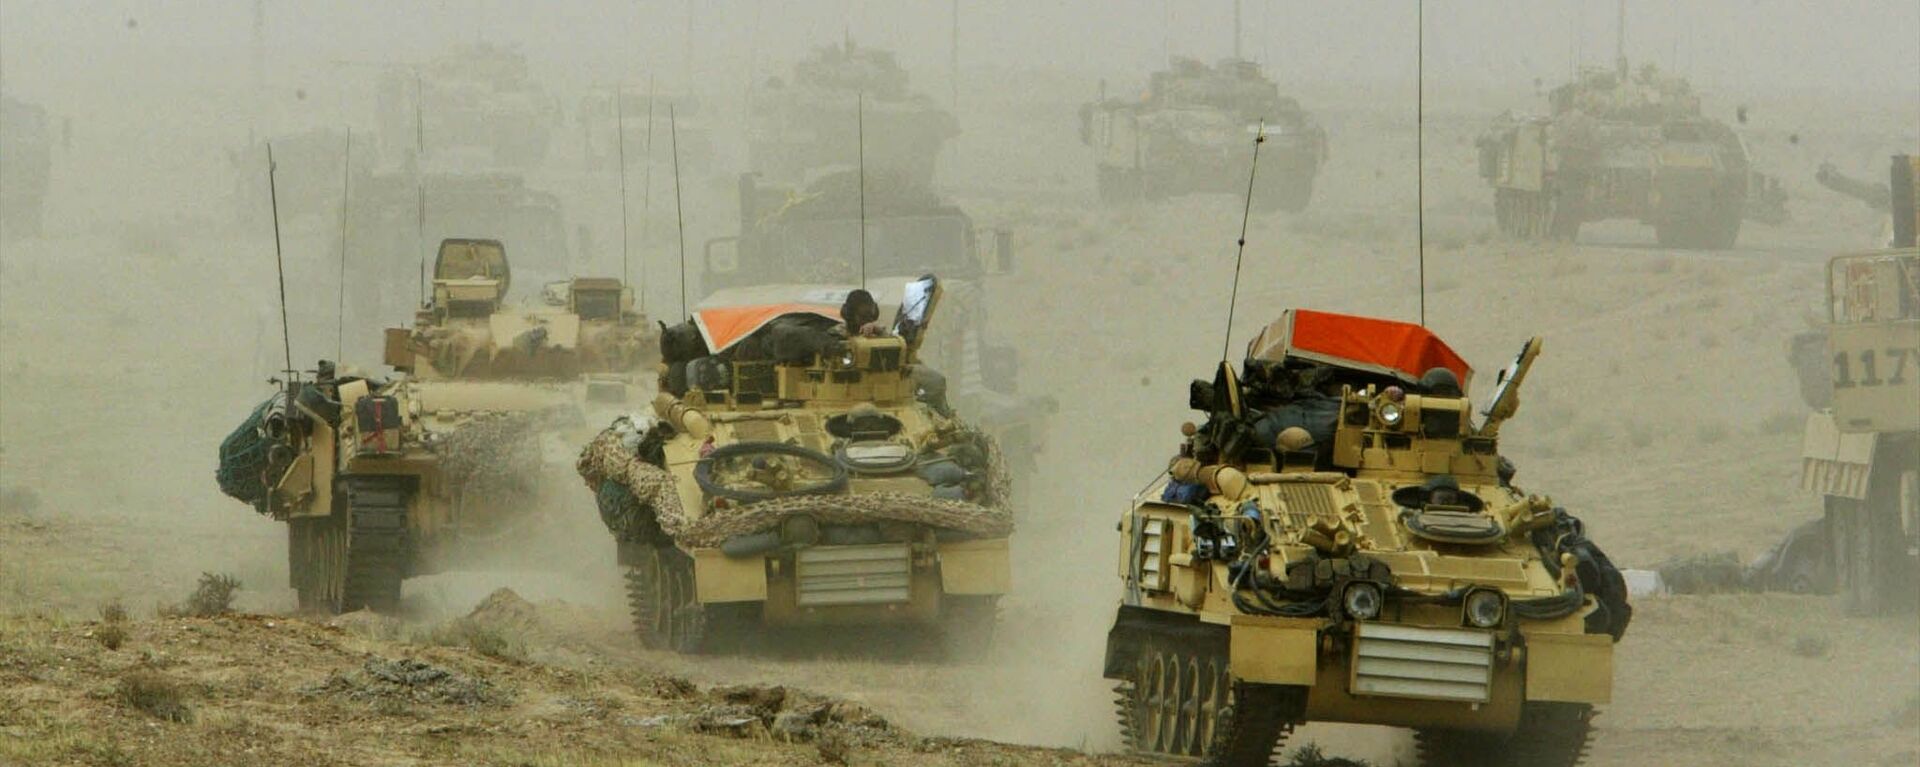 غزو العراق 2003 - سبوتنيك عربي, 1920, 06.07.2016